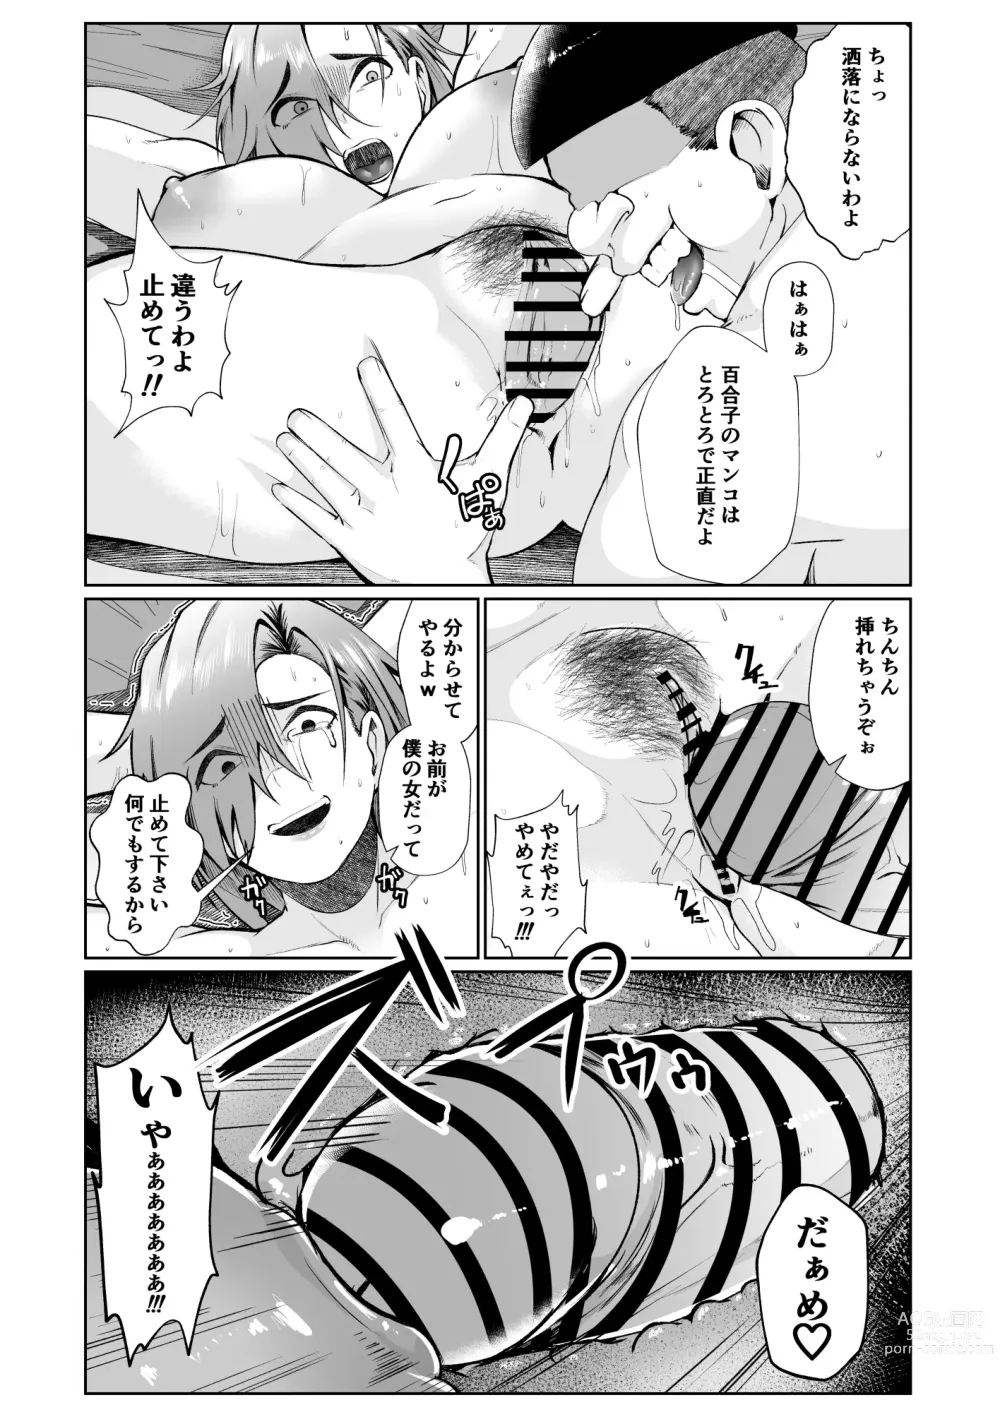 Page 20 of doujinshi Ojisanga shakinwo tsumano karadade hotenshitehoshiito iwaretanode kaidakushita hanashi